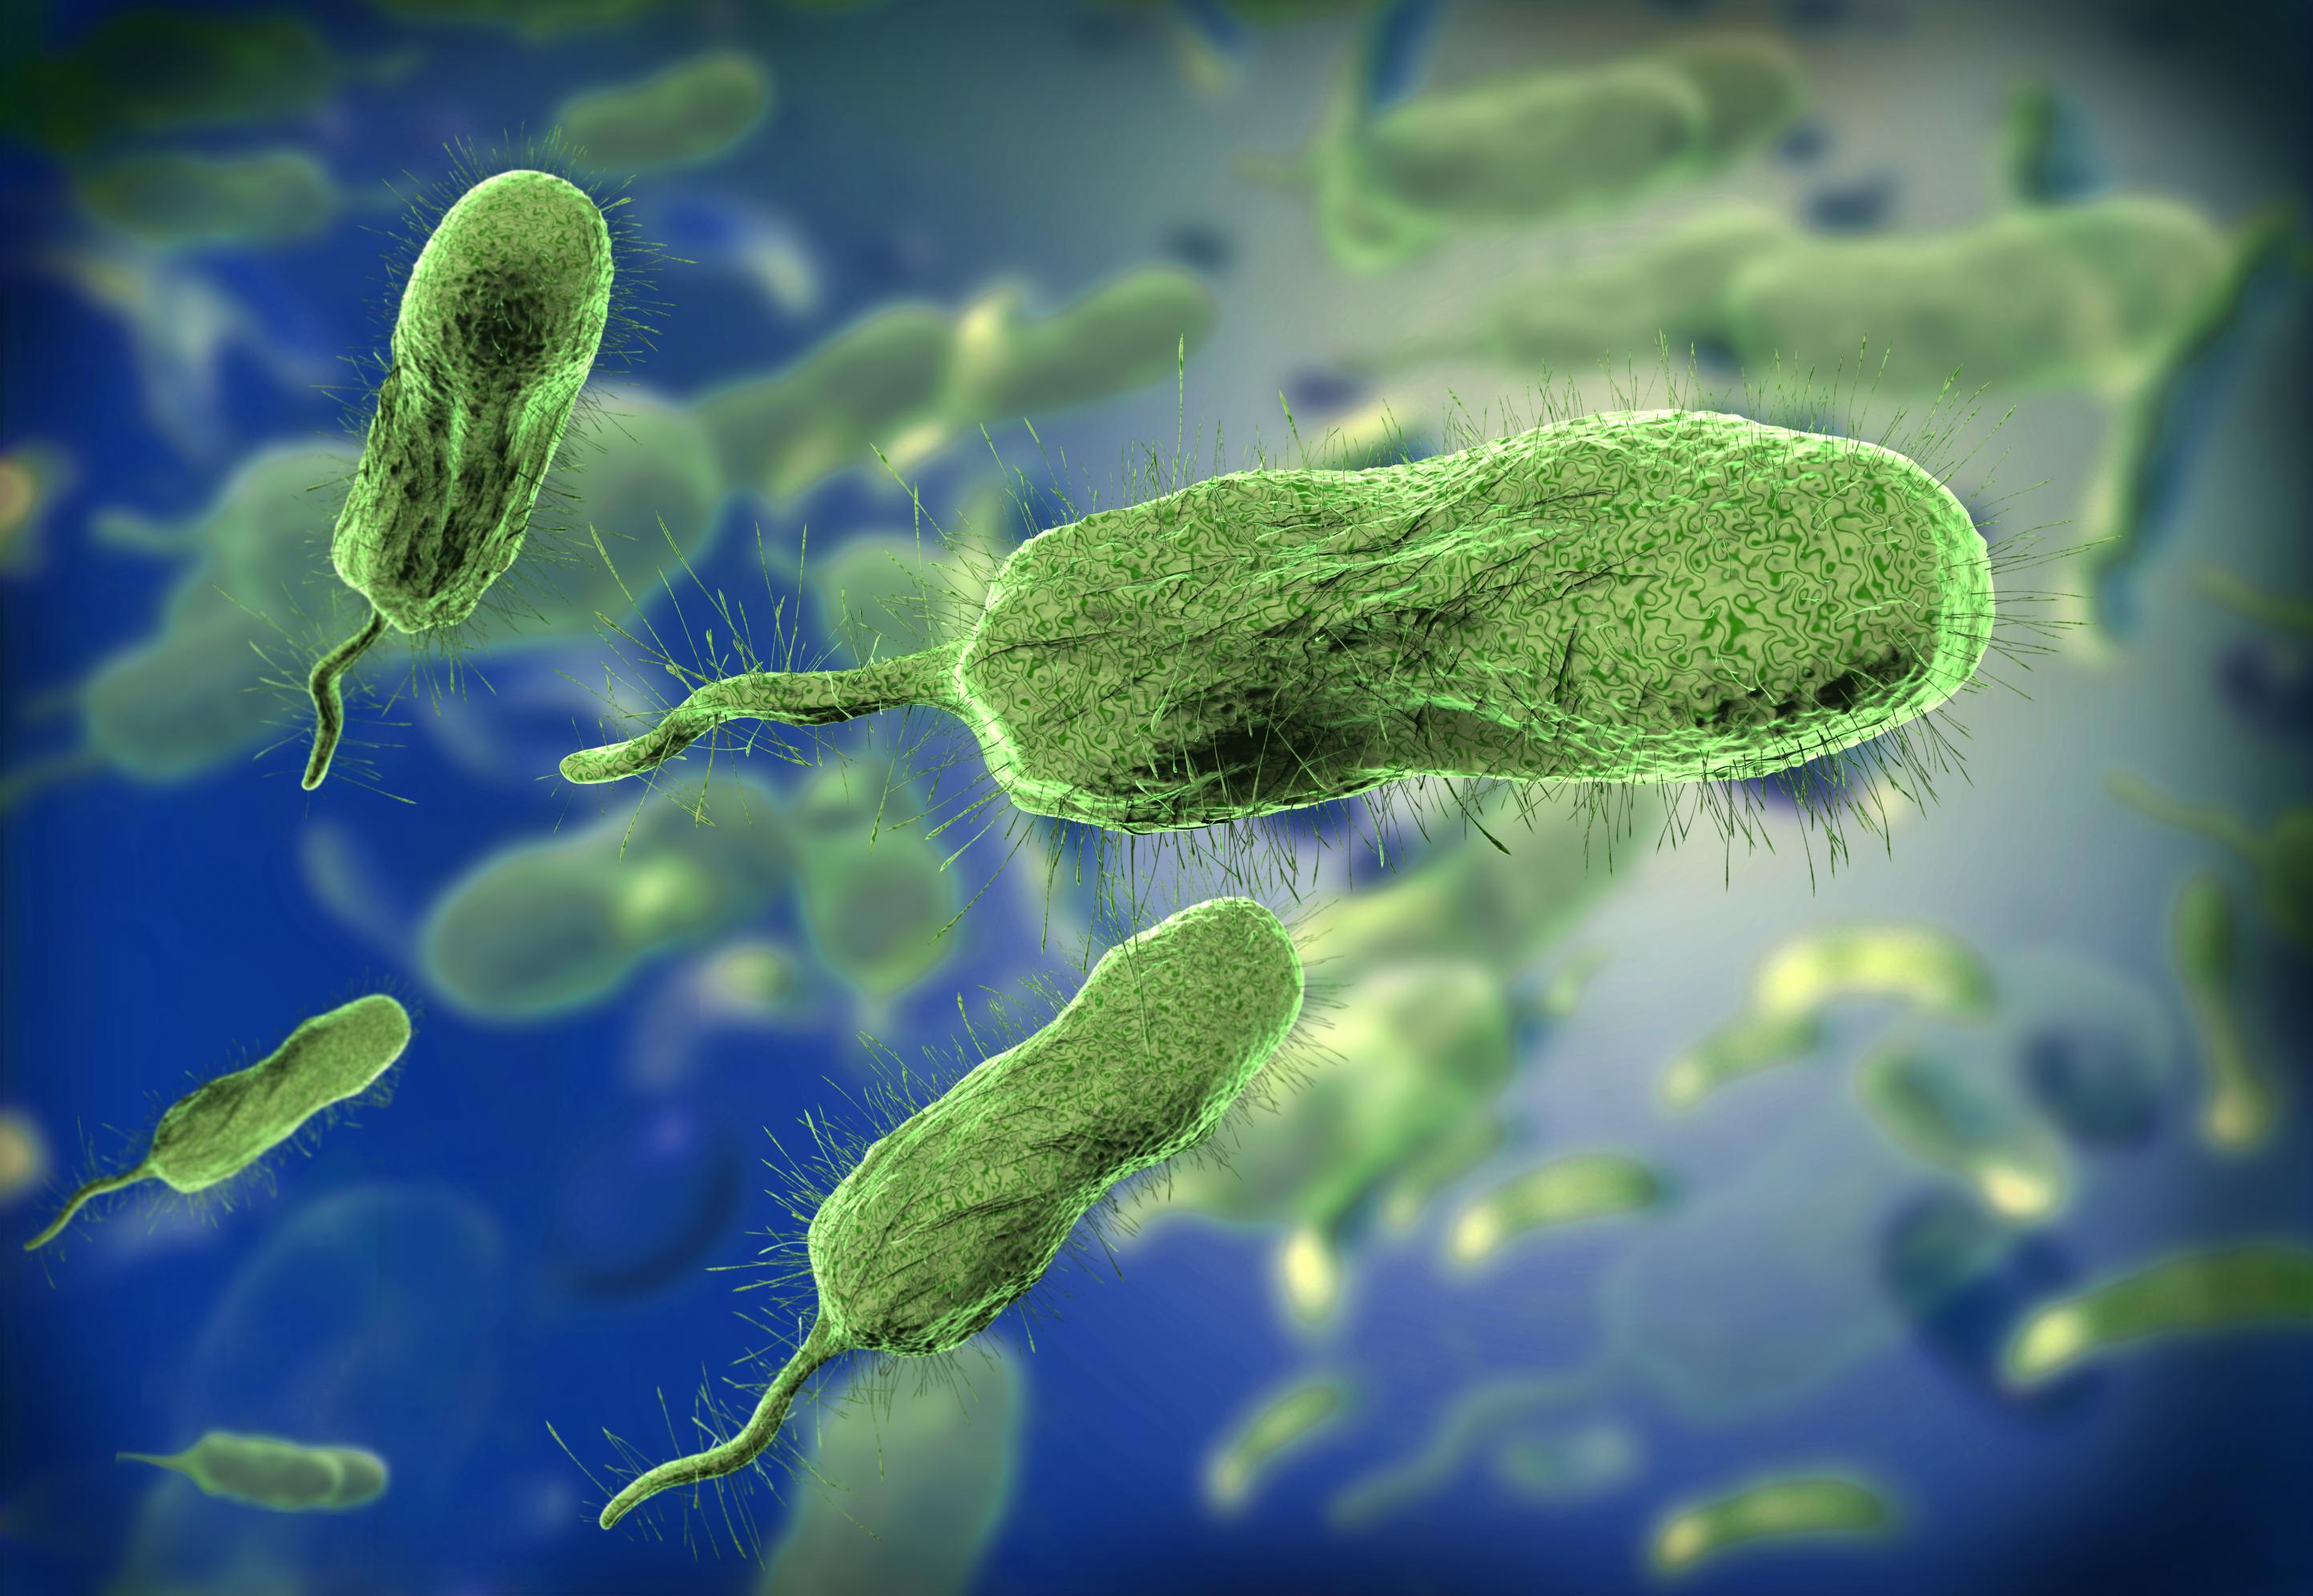 Das Bild zeigt Vibrionen unter dem Mikroskop. Sie sehen aus wie grüne Bohnen mit einem Schwanz und Härchen